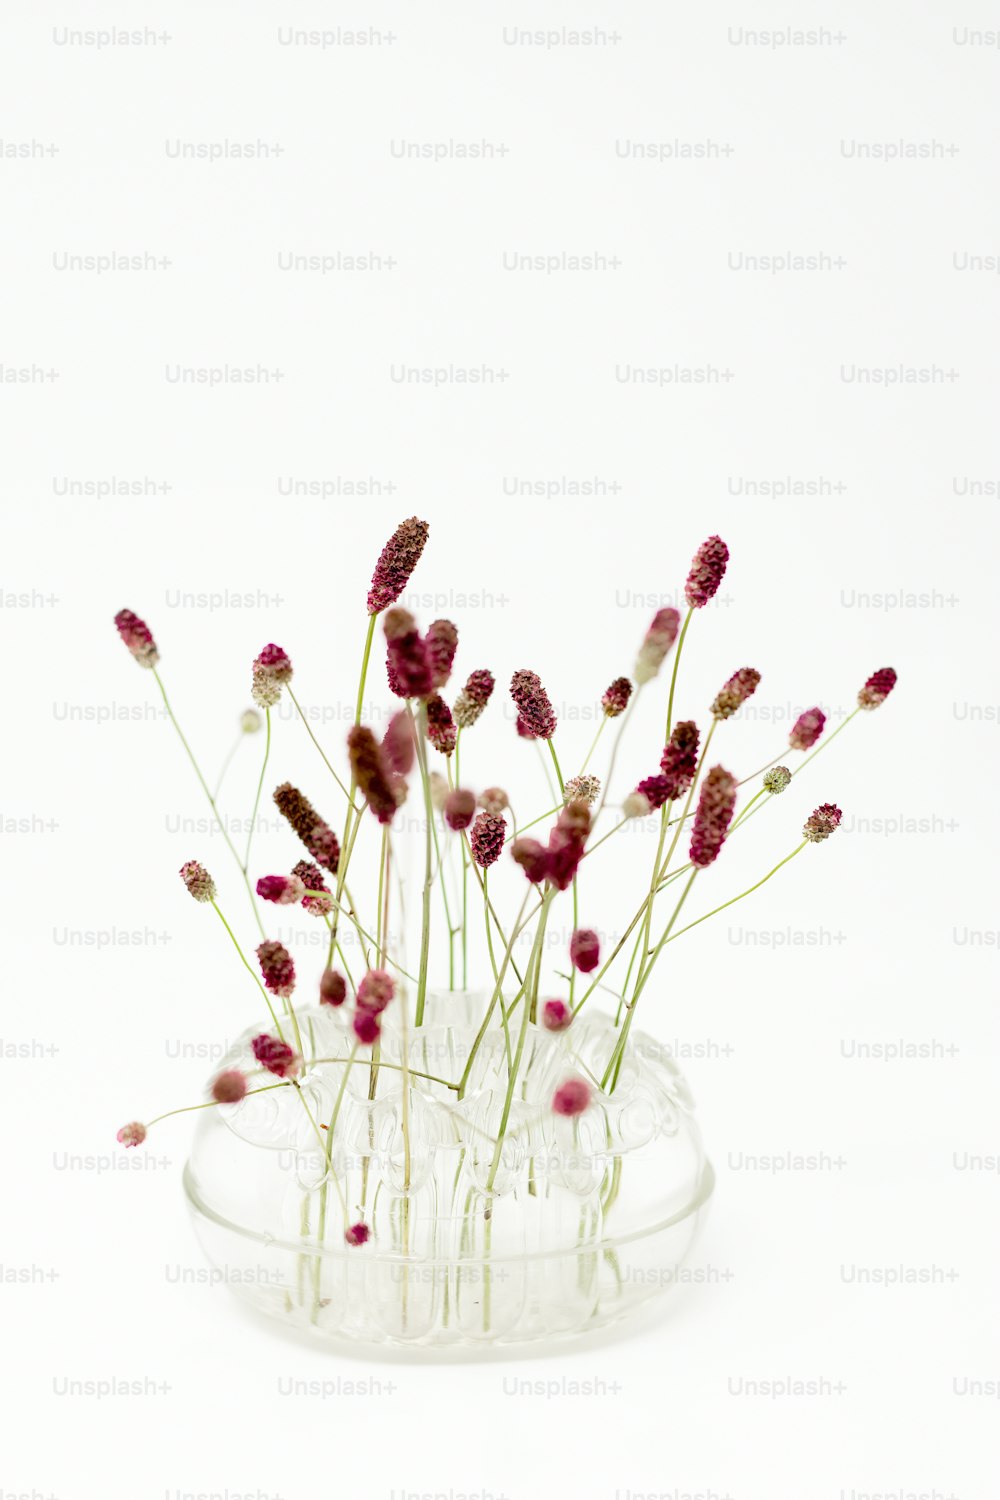 um vaso de vidro cheio de flores roxas em cima de uma mesa branca